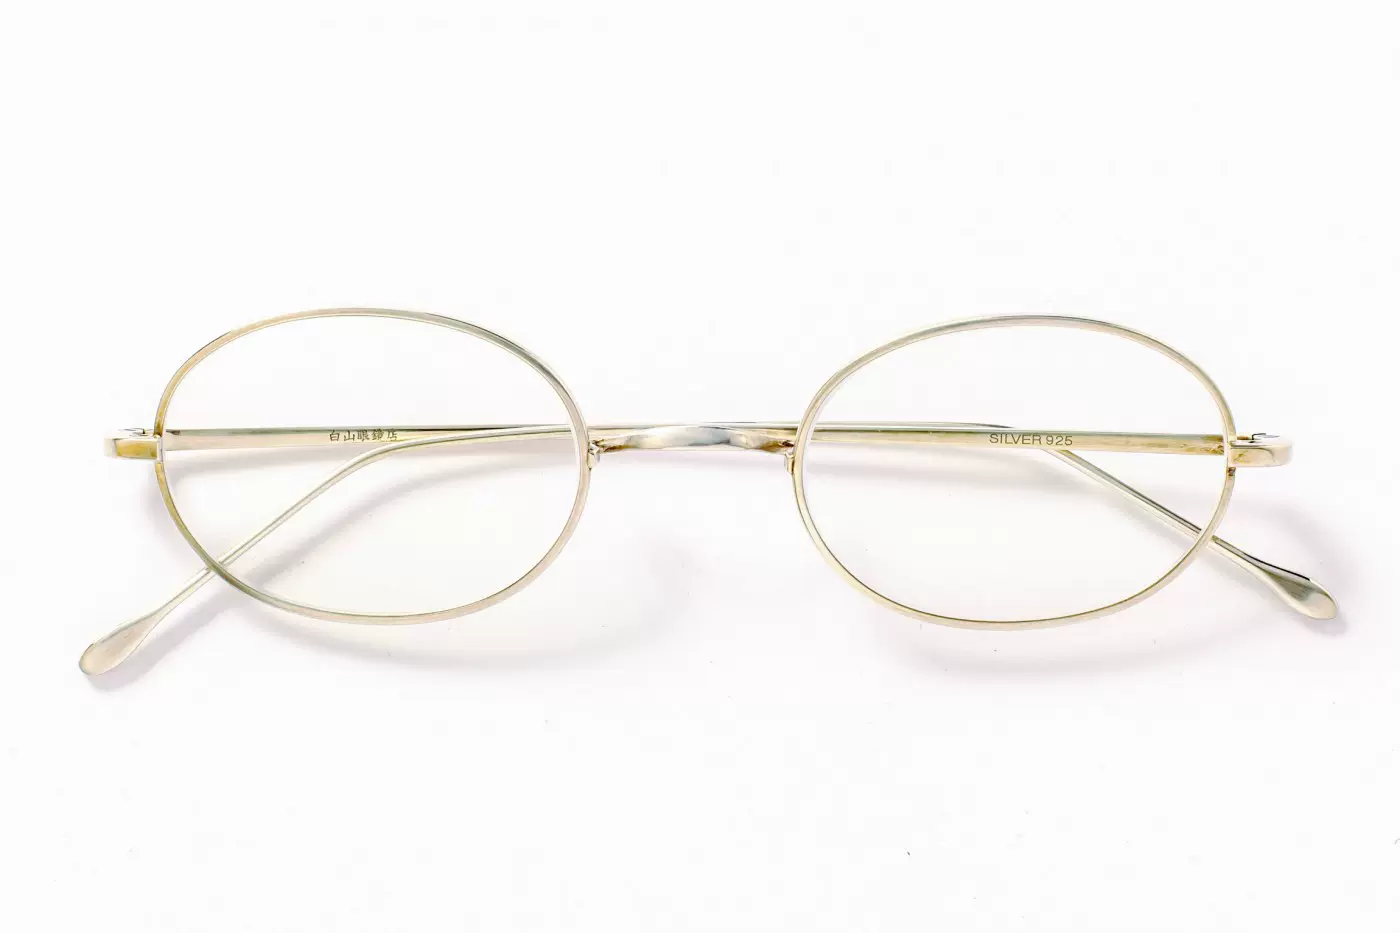 9,600円白山眼鏡店 ニューマンレイ山コンビ (ROUND) 丸眼鏡